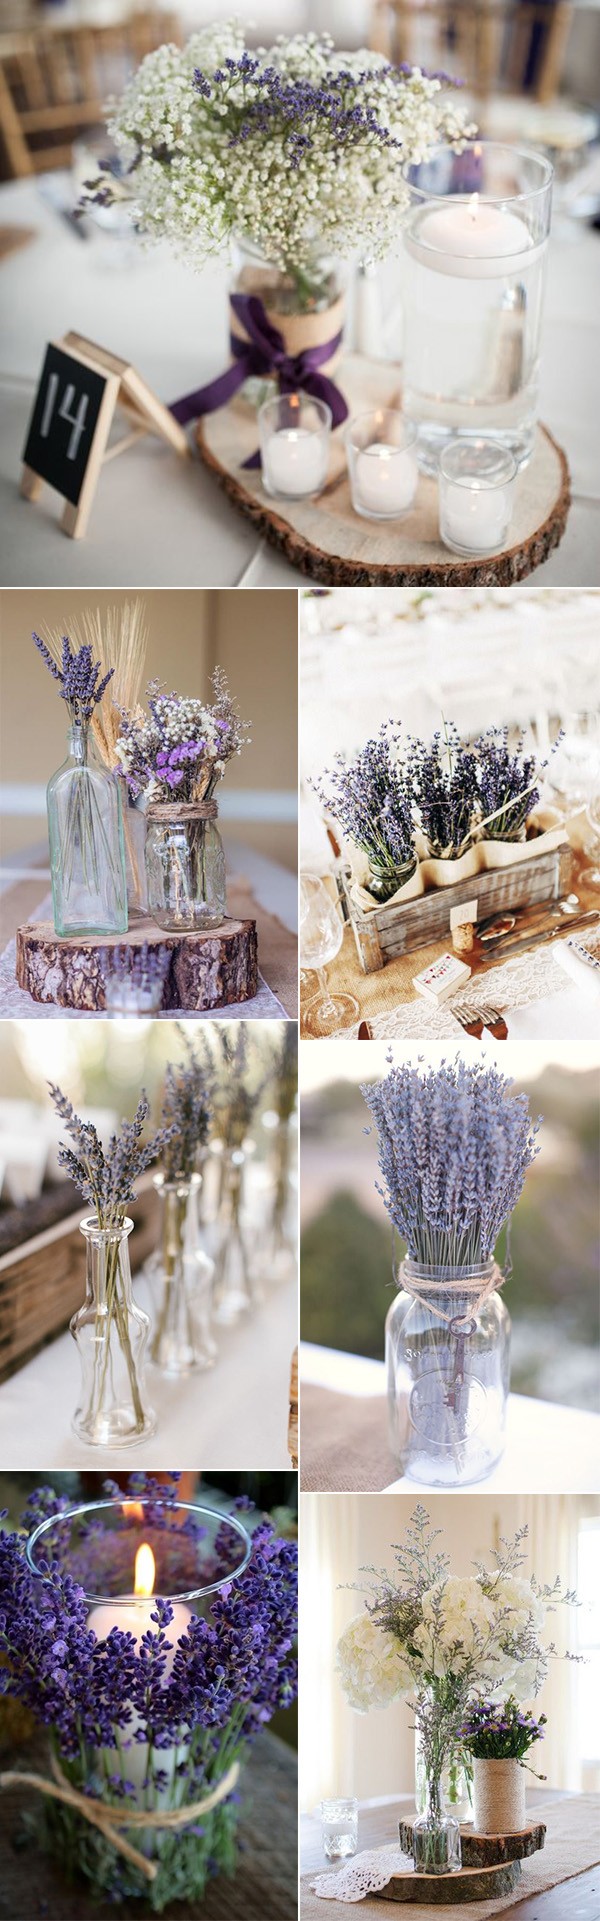 Chic purple-inspired lavender wedding centerpiece ideas